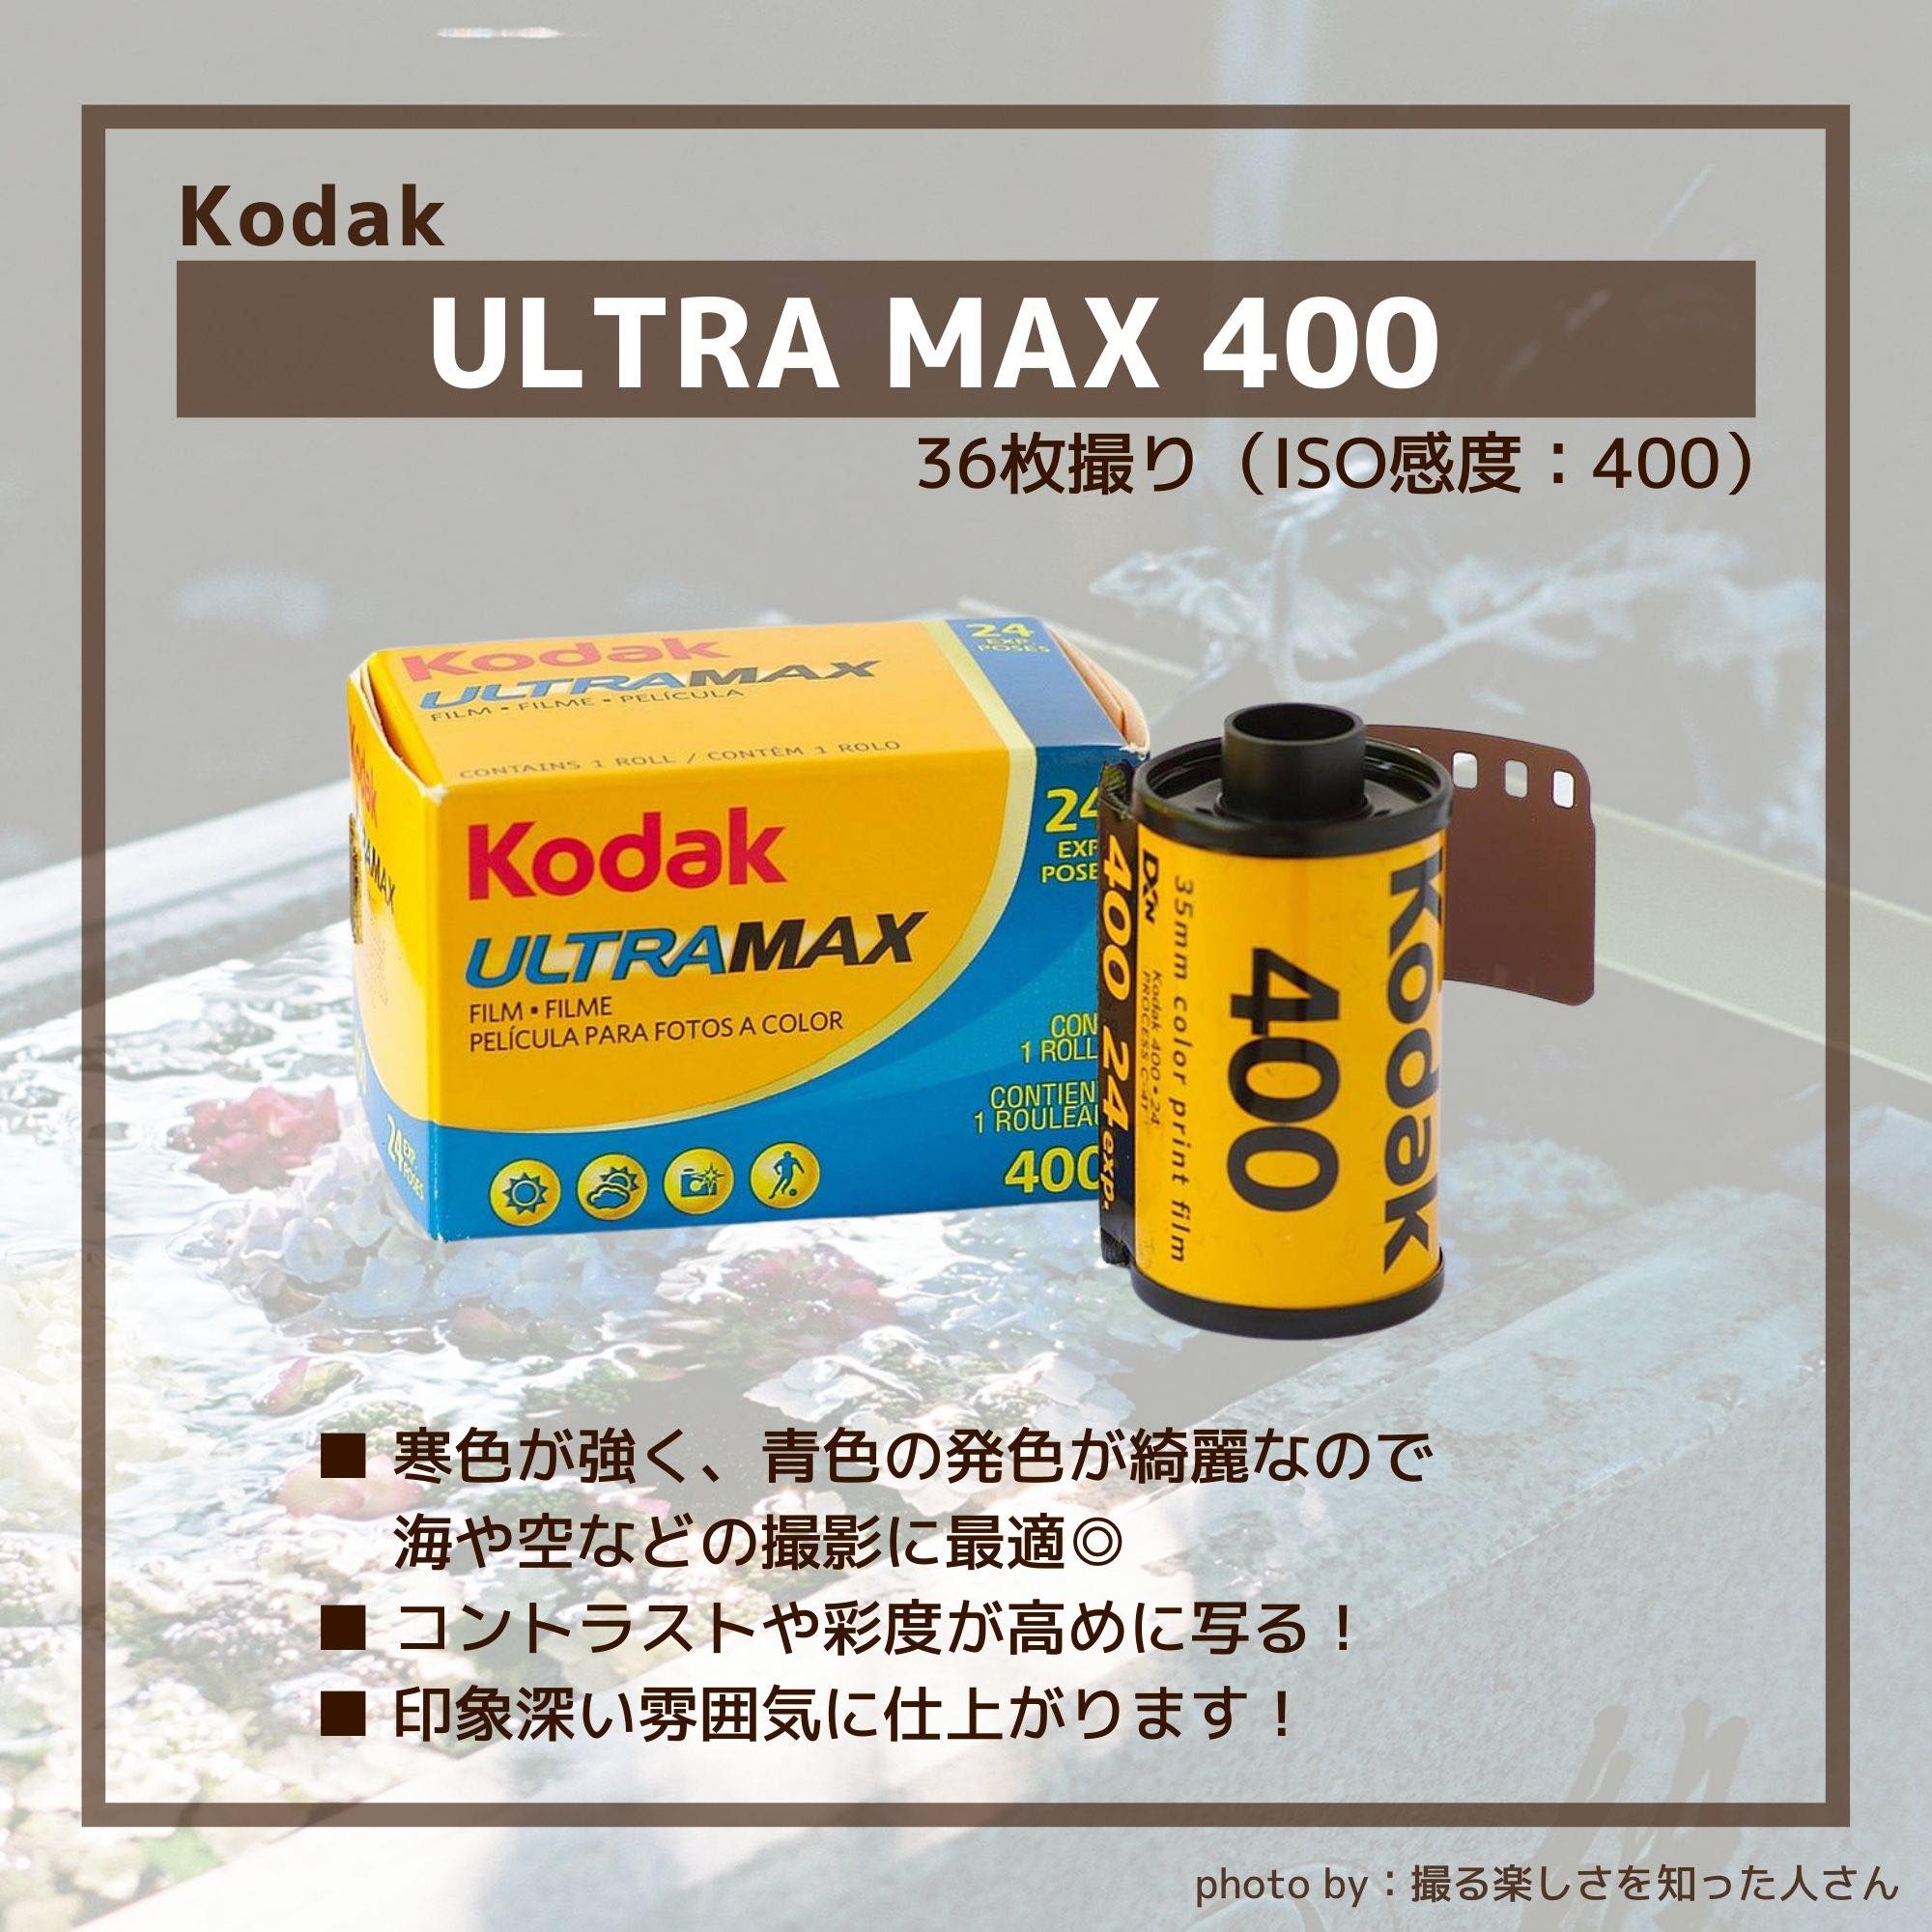 アウトレット販売店舗 - Kodak ULTRA MAX ウルトラマックス400